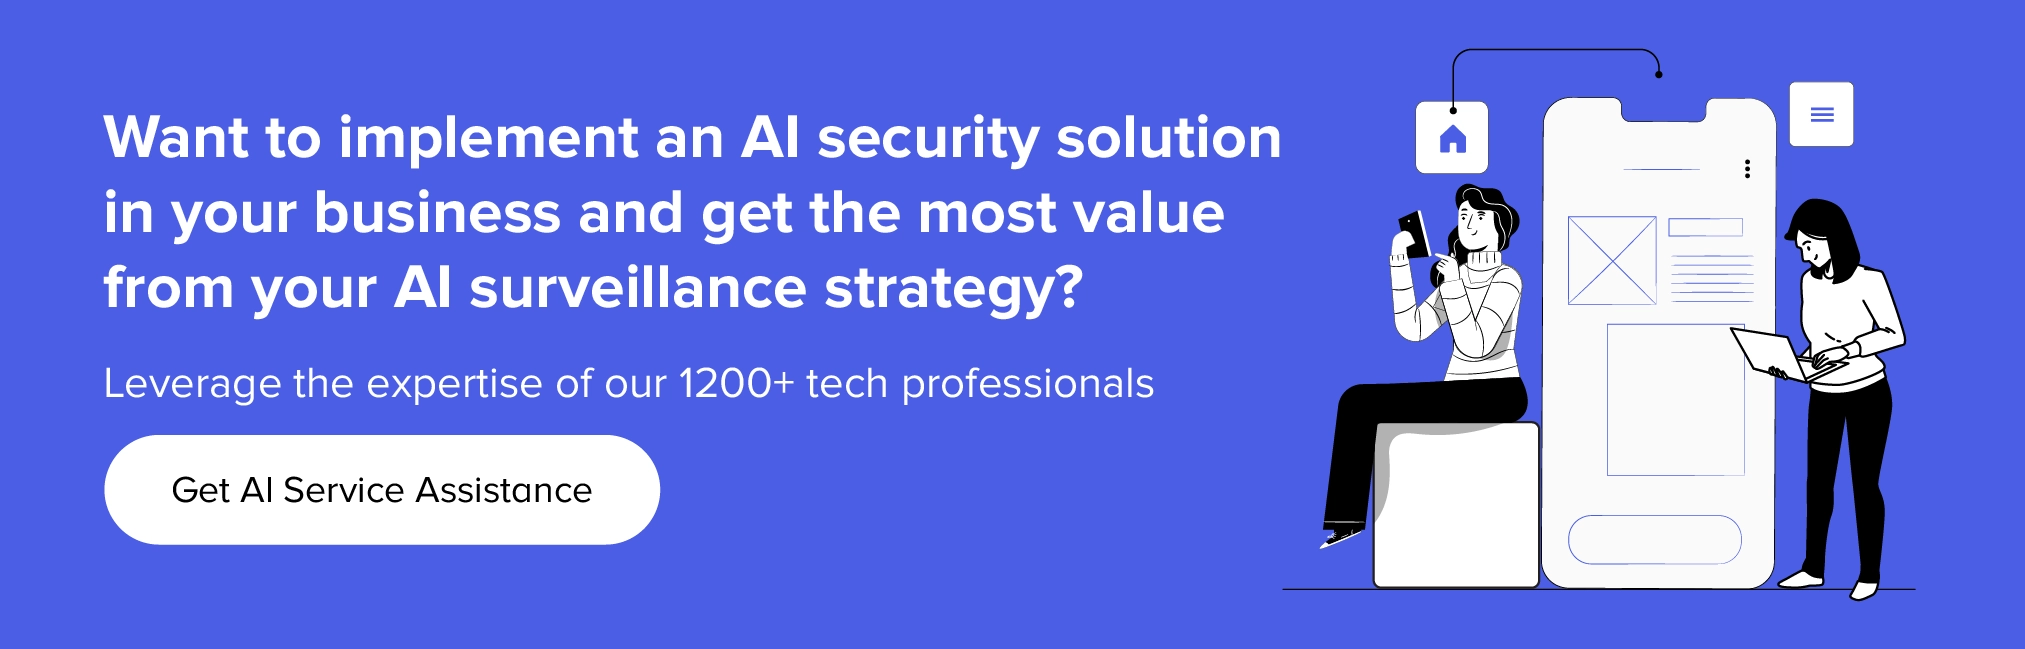 Свяжитесь с нами, чтобы внедрить решения безопасности на основе искусственного интеллекта в вашем бизнесе